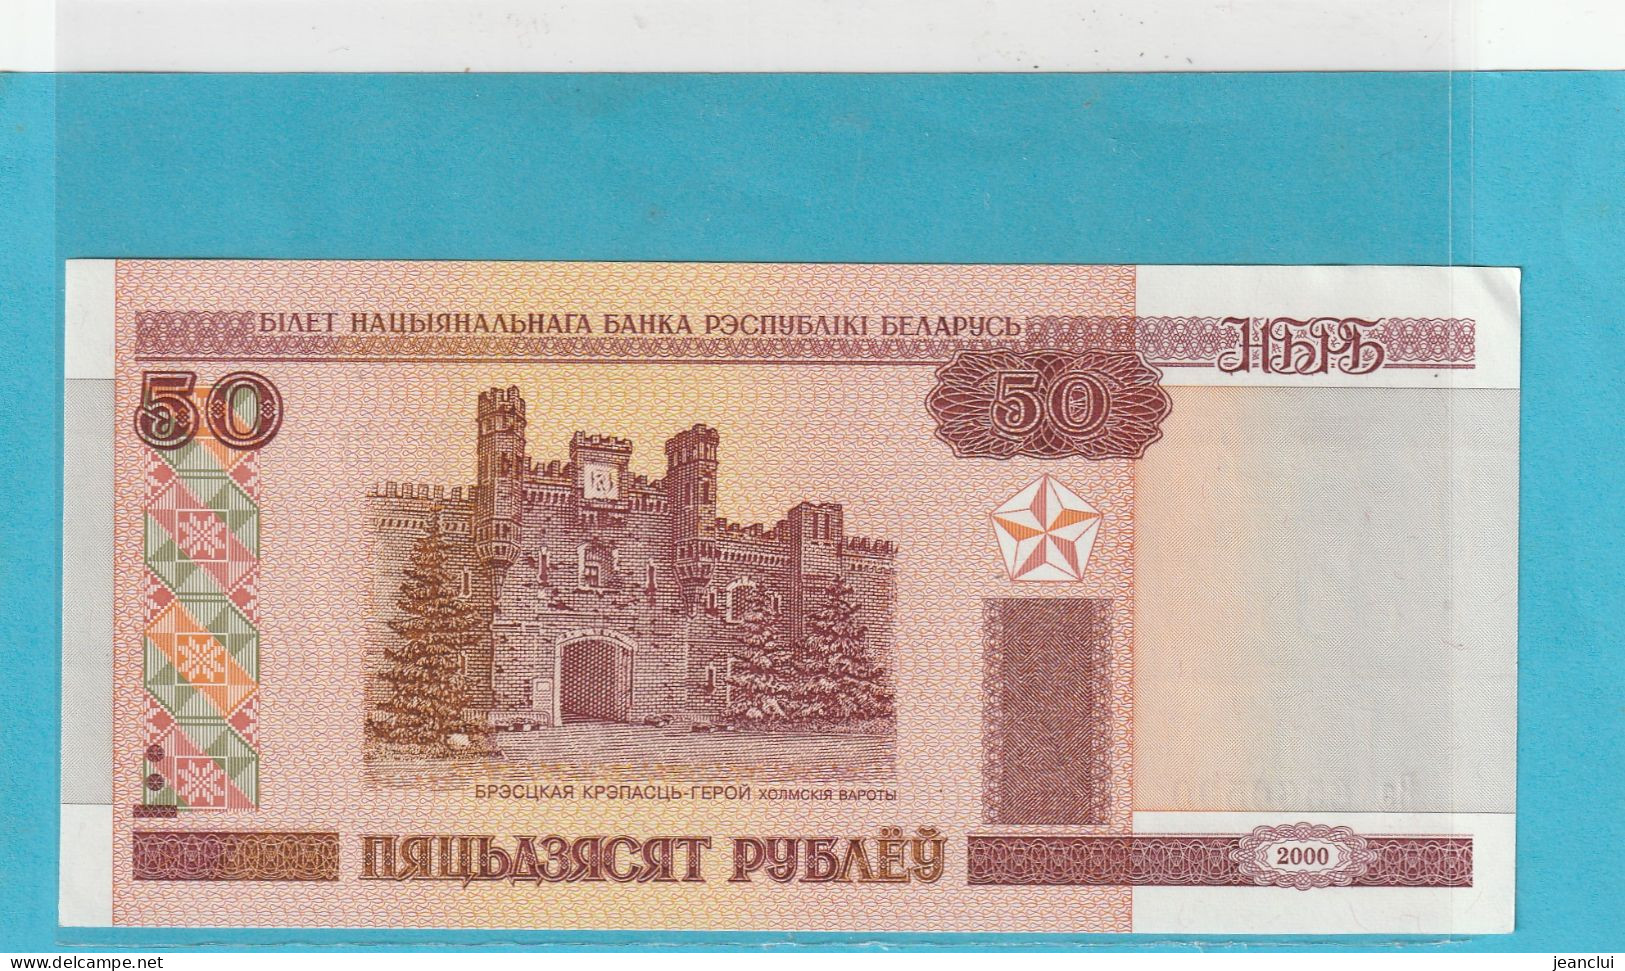 BELARUS . 50 RUBLE  . 2000 . N° 6560509  .  ETAT LUXE  .  2 SCANNES - Belarus